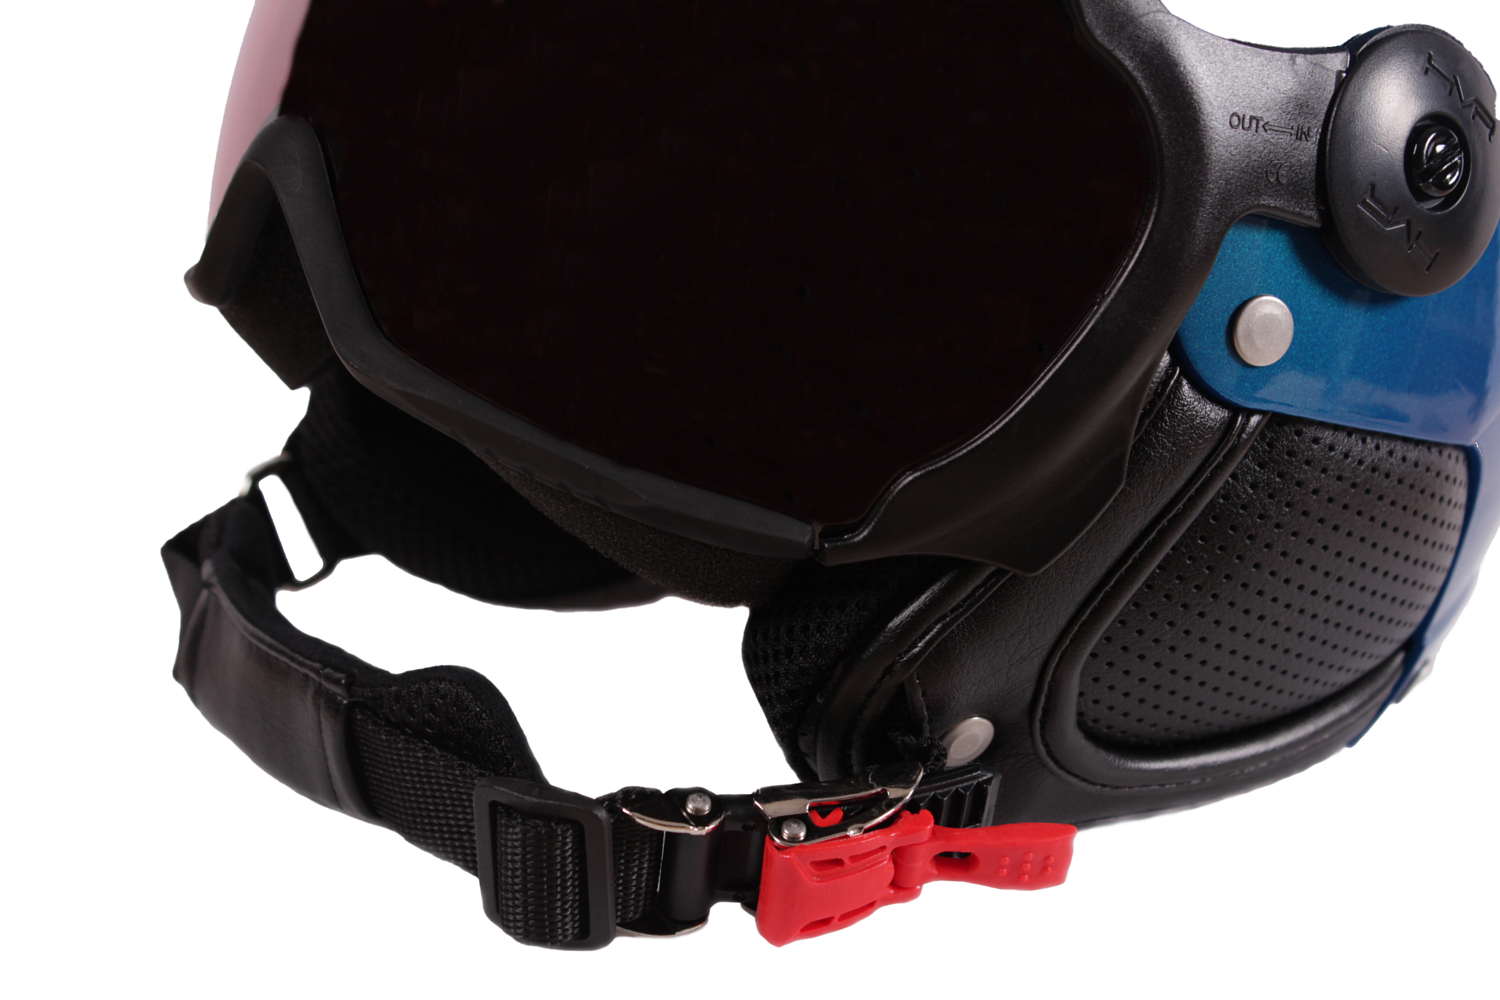 Шлем с визором HMR H3 Blu/Electtrico